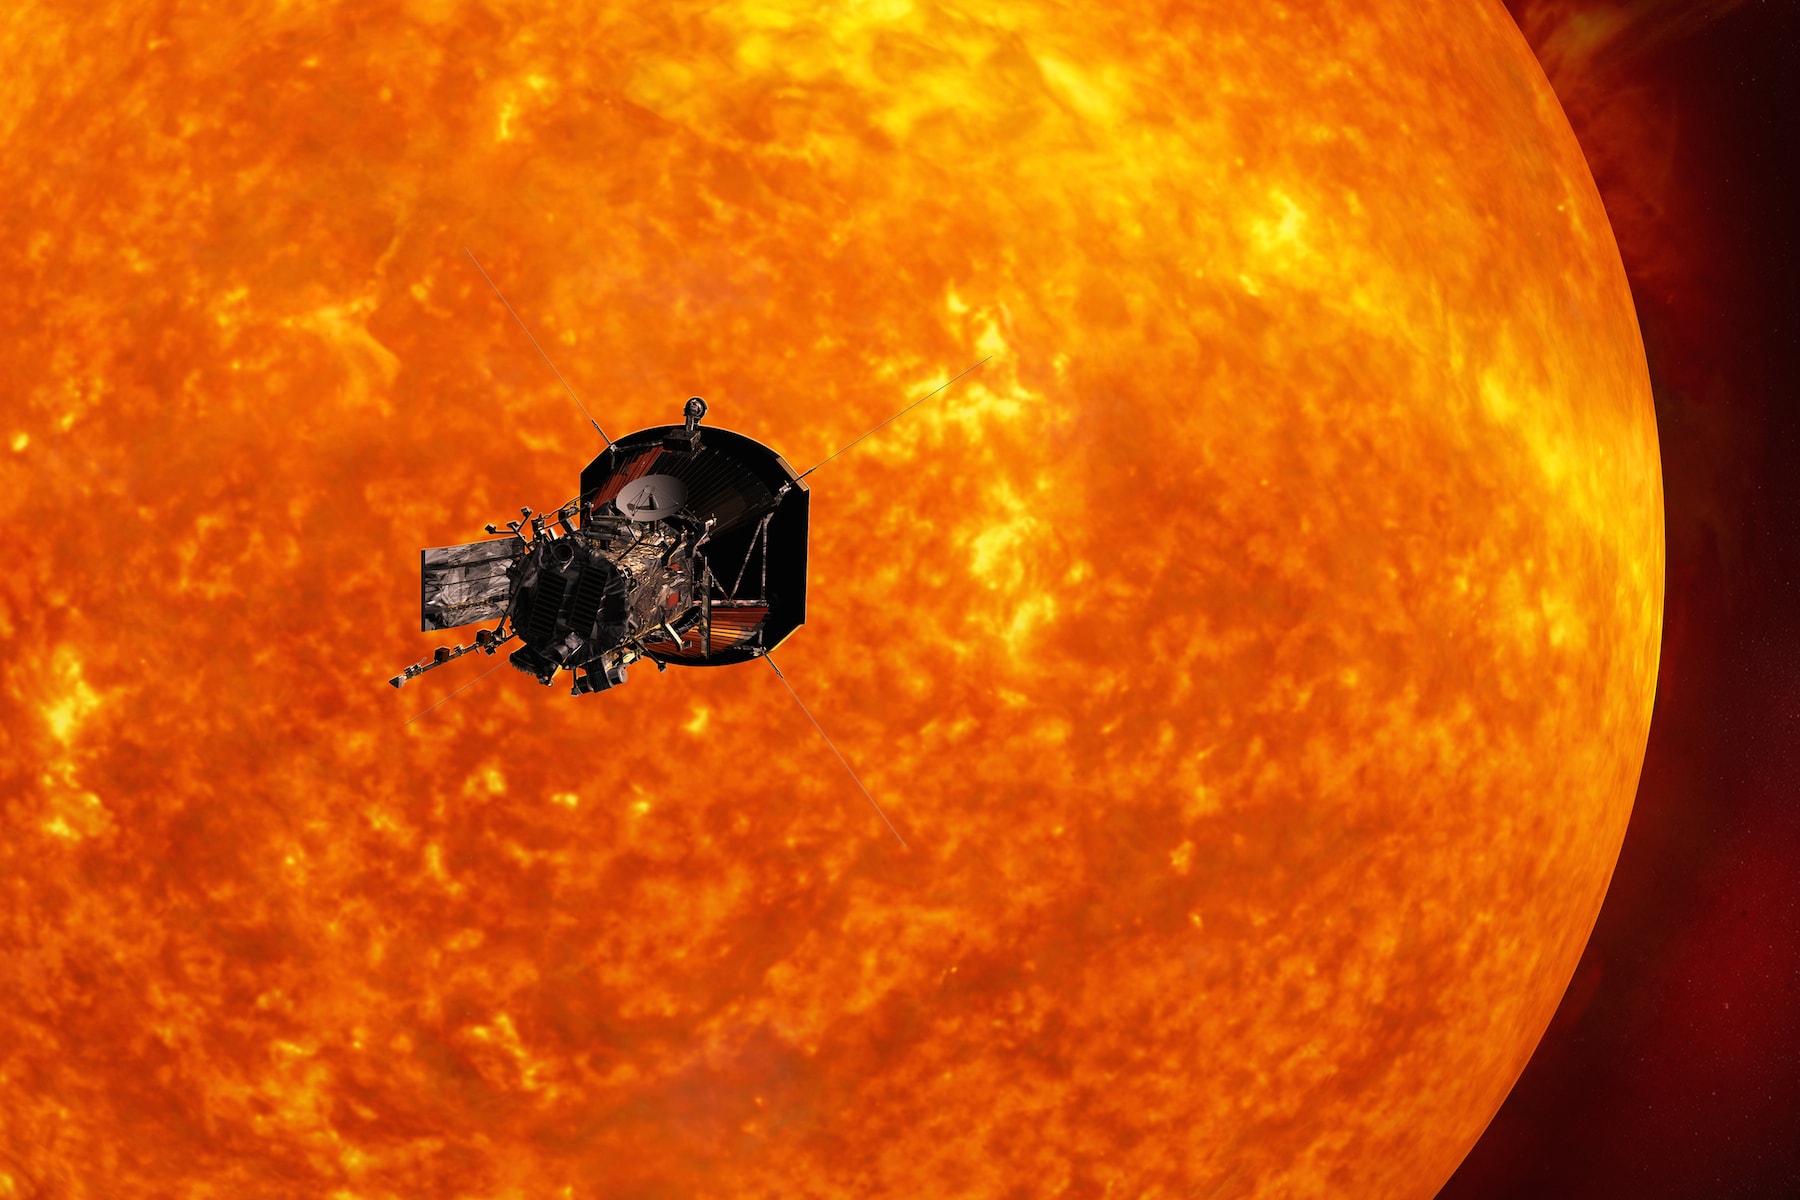 登陸太陽！NASA 正式宣布展開探索太陽任務